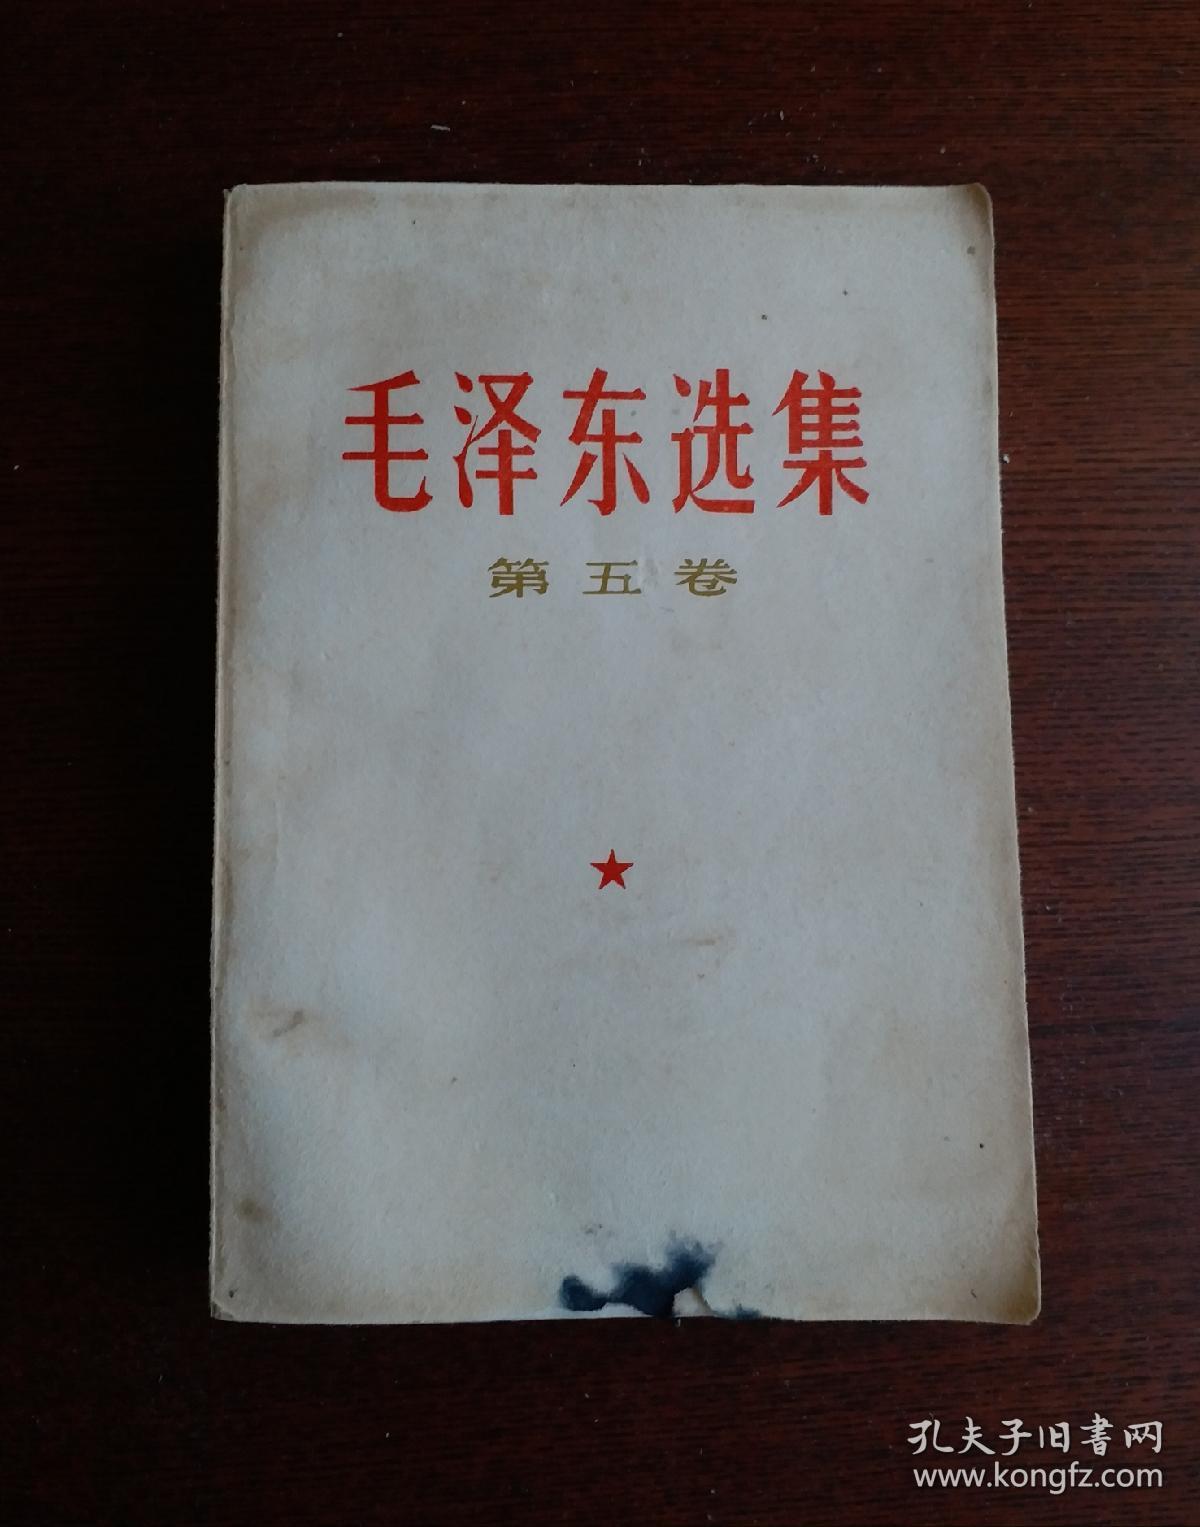 毛泽东选集 第五卷 1977一04一人民出版社1版一河北1印，毛主席语录 毛主席著作 五卷。！八五品！！